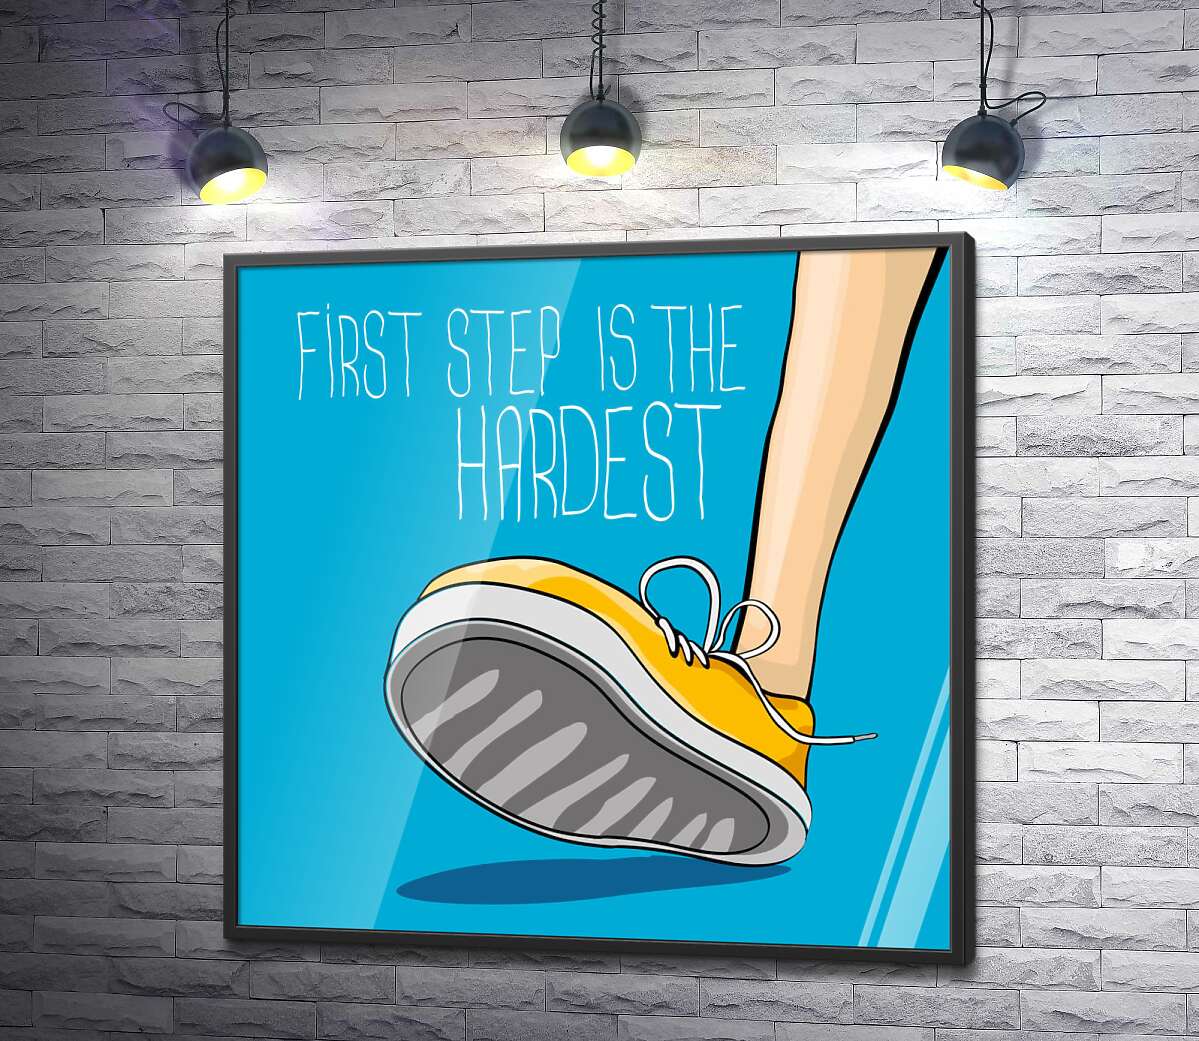 постер Желтый кроссовок ступает на землю рядом с фразой "first step is the hardest"